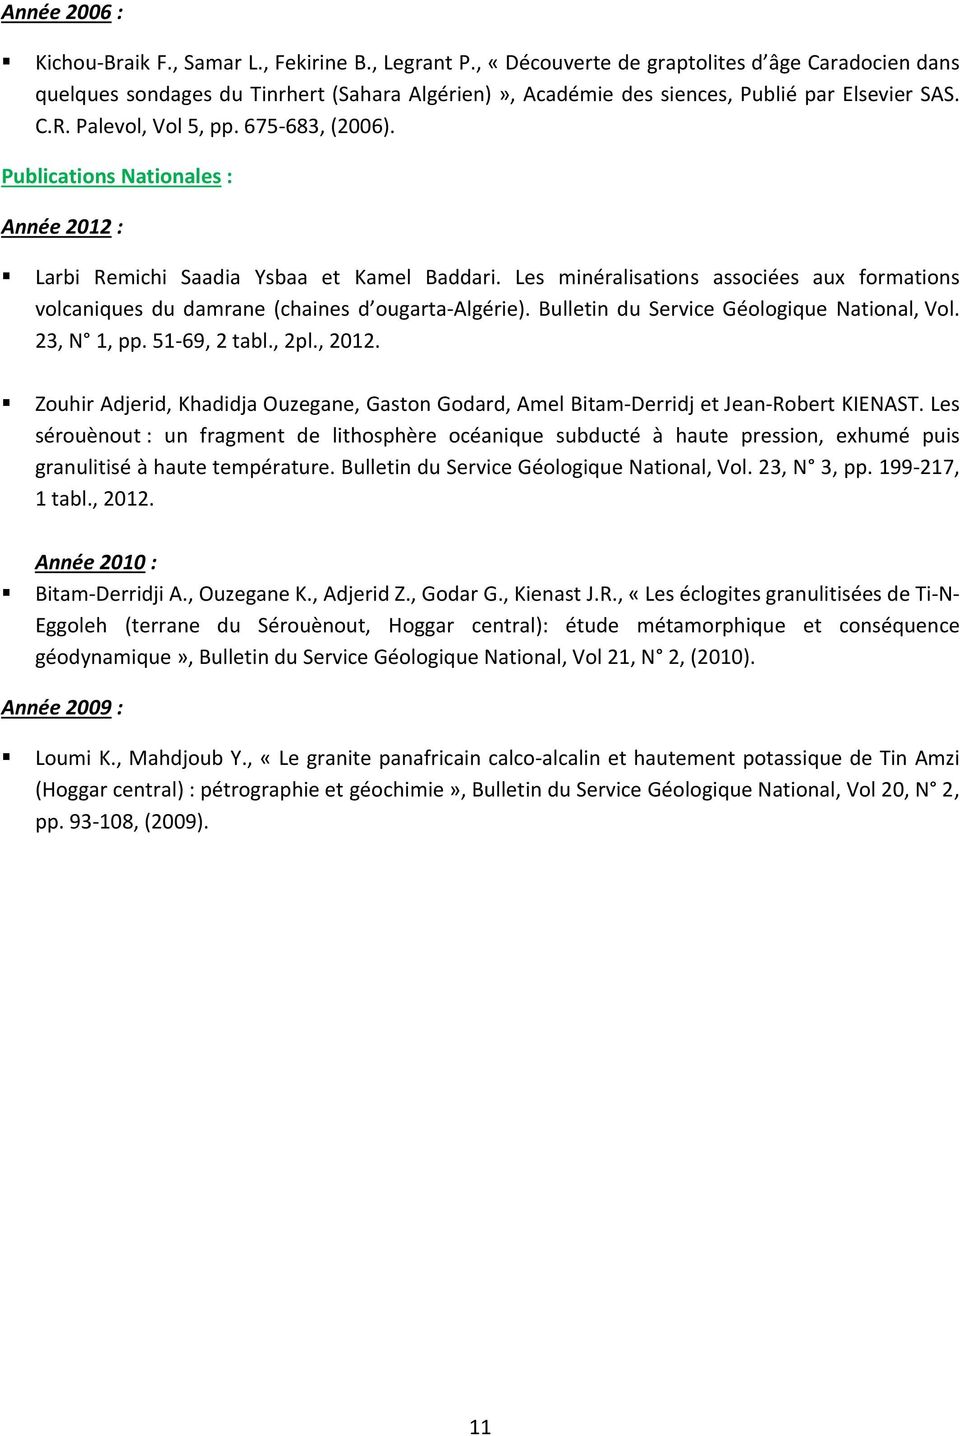 Publications Nationales : Année 2012 : Larbi Remichi Saadia Ysbaa et Kamel Baddari. Les minéralisations associées aux formations volcaniques du damrane (chaines d ougarta-algérie).